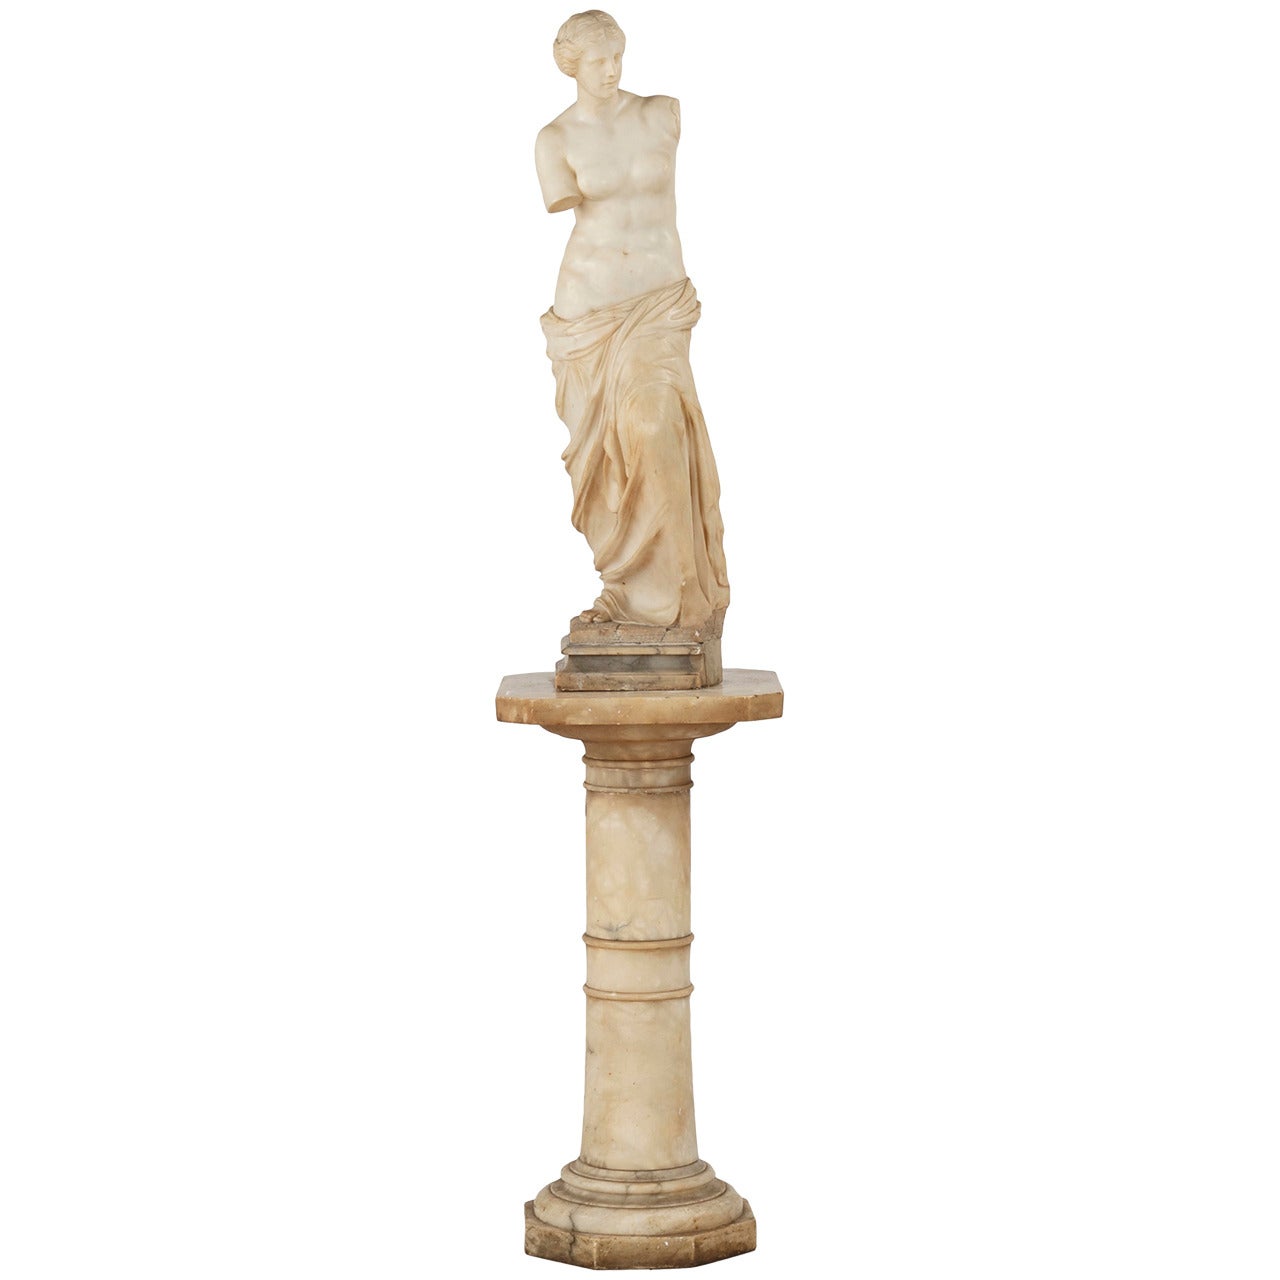 Continental Marble Sculpture of Venus de Milo, after the Antique